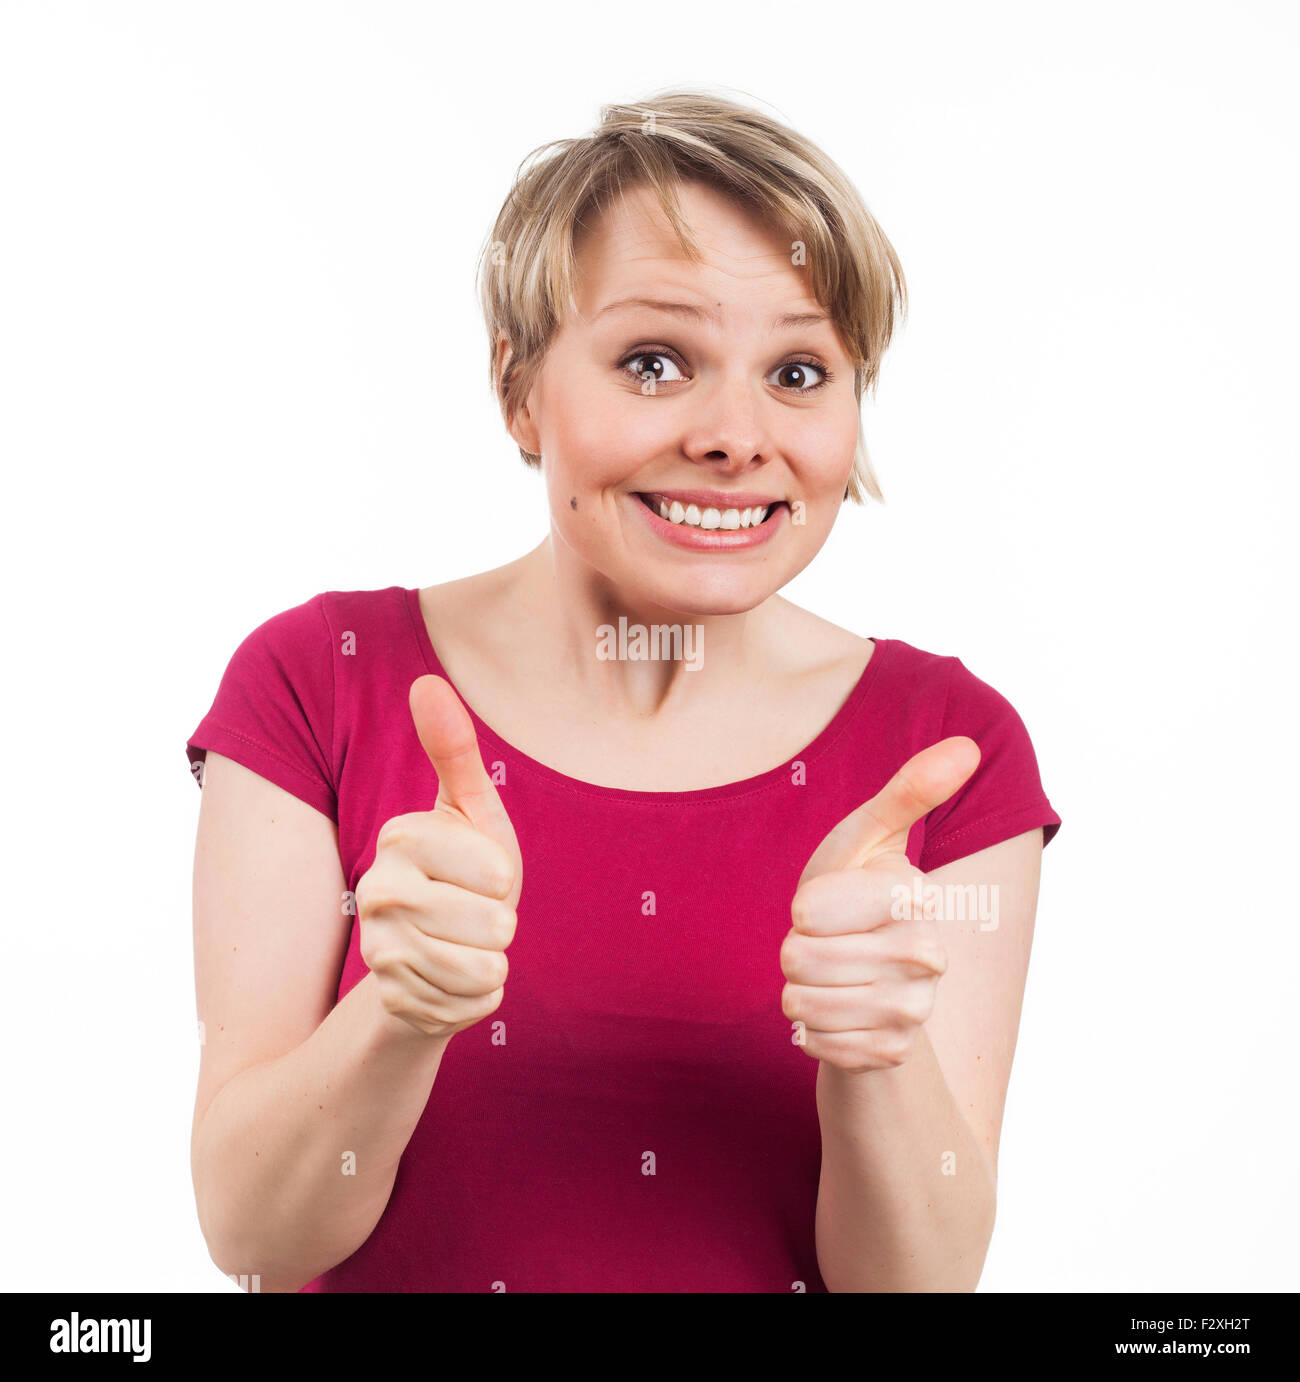 Junge Frau zeigt ihre Daumen und ein schönes Lächeln, isoliert auf weiß Stockfoto